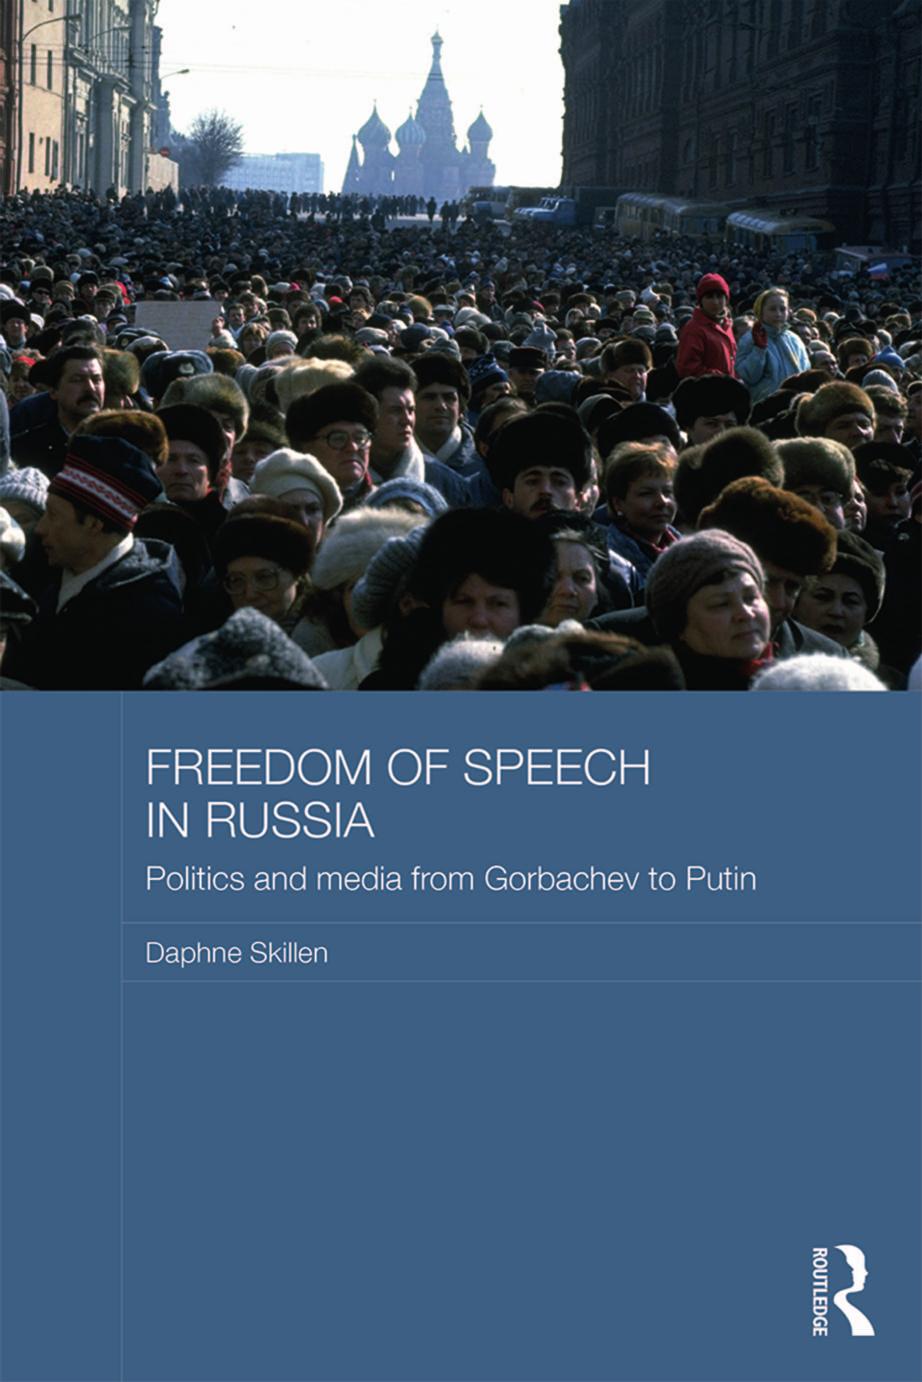 Freedom of Speech in Russia by Daphne Skillen